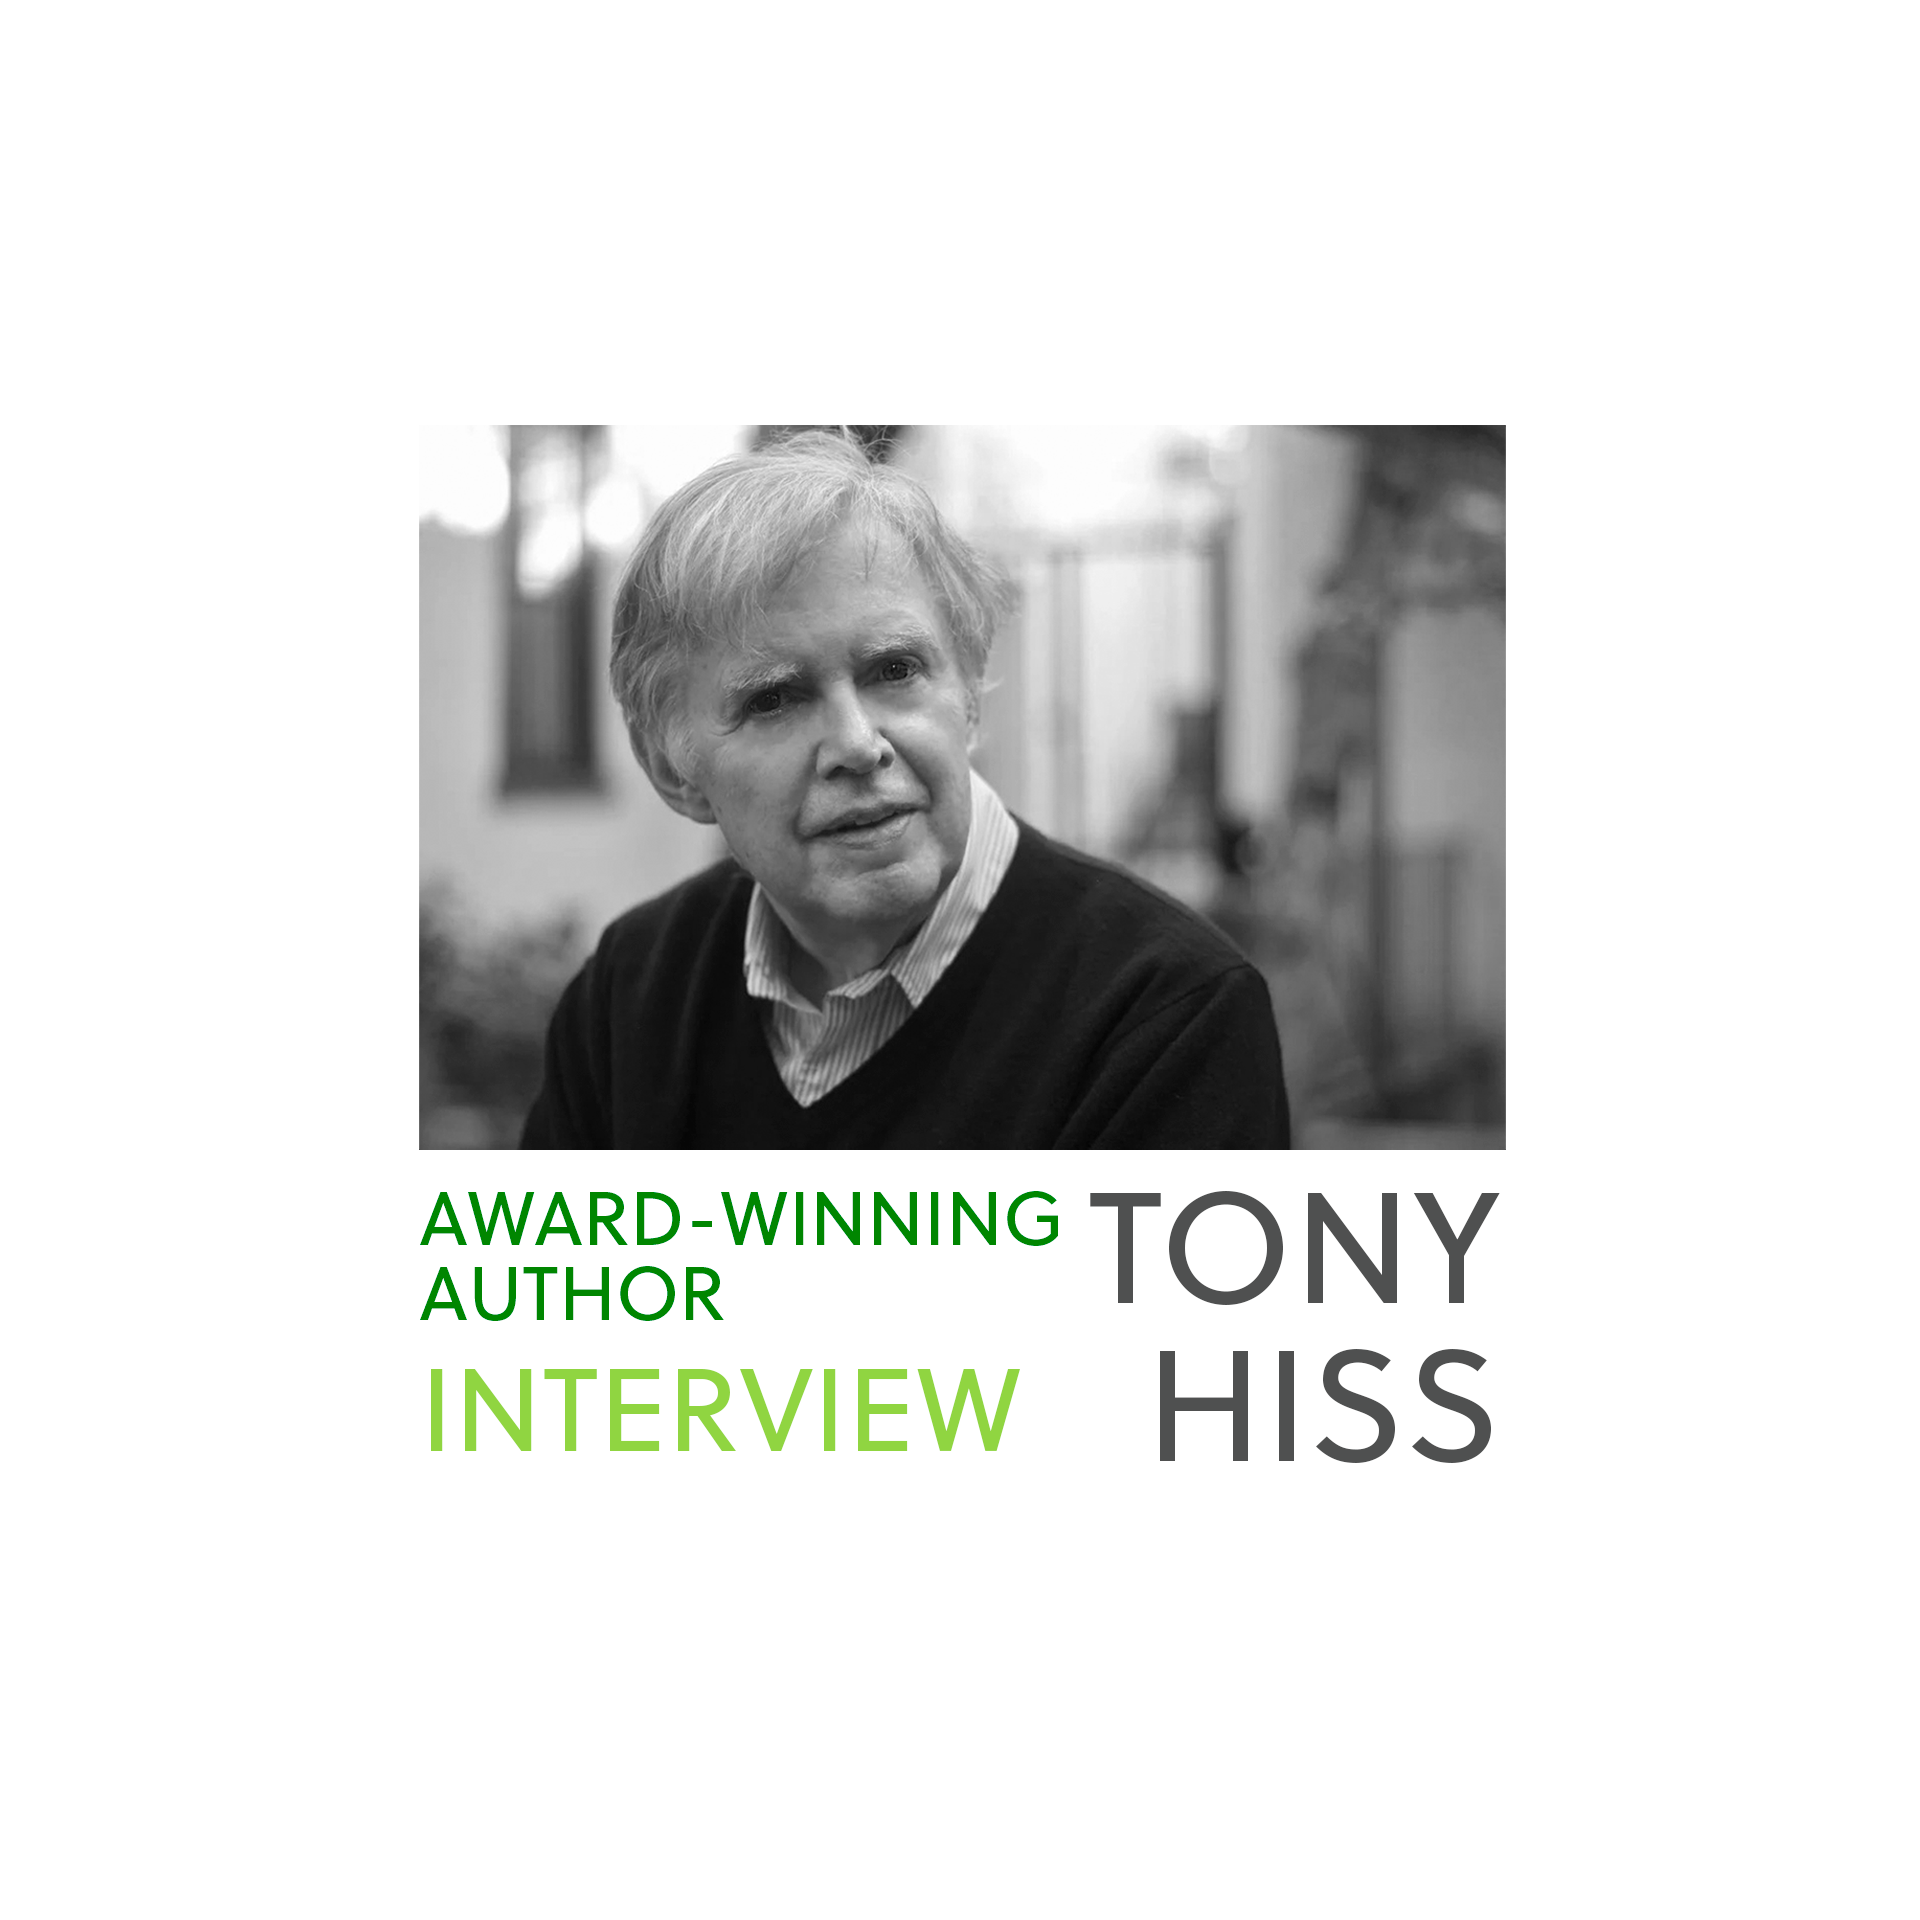 Tony Hiss: 